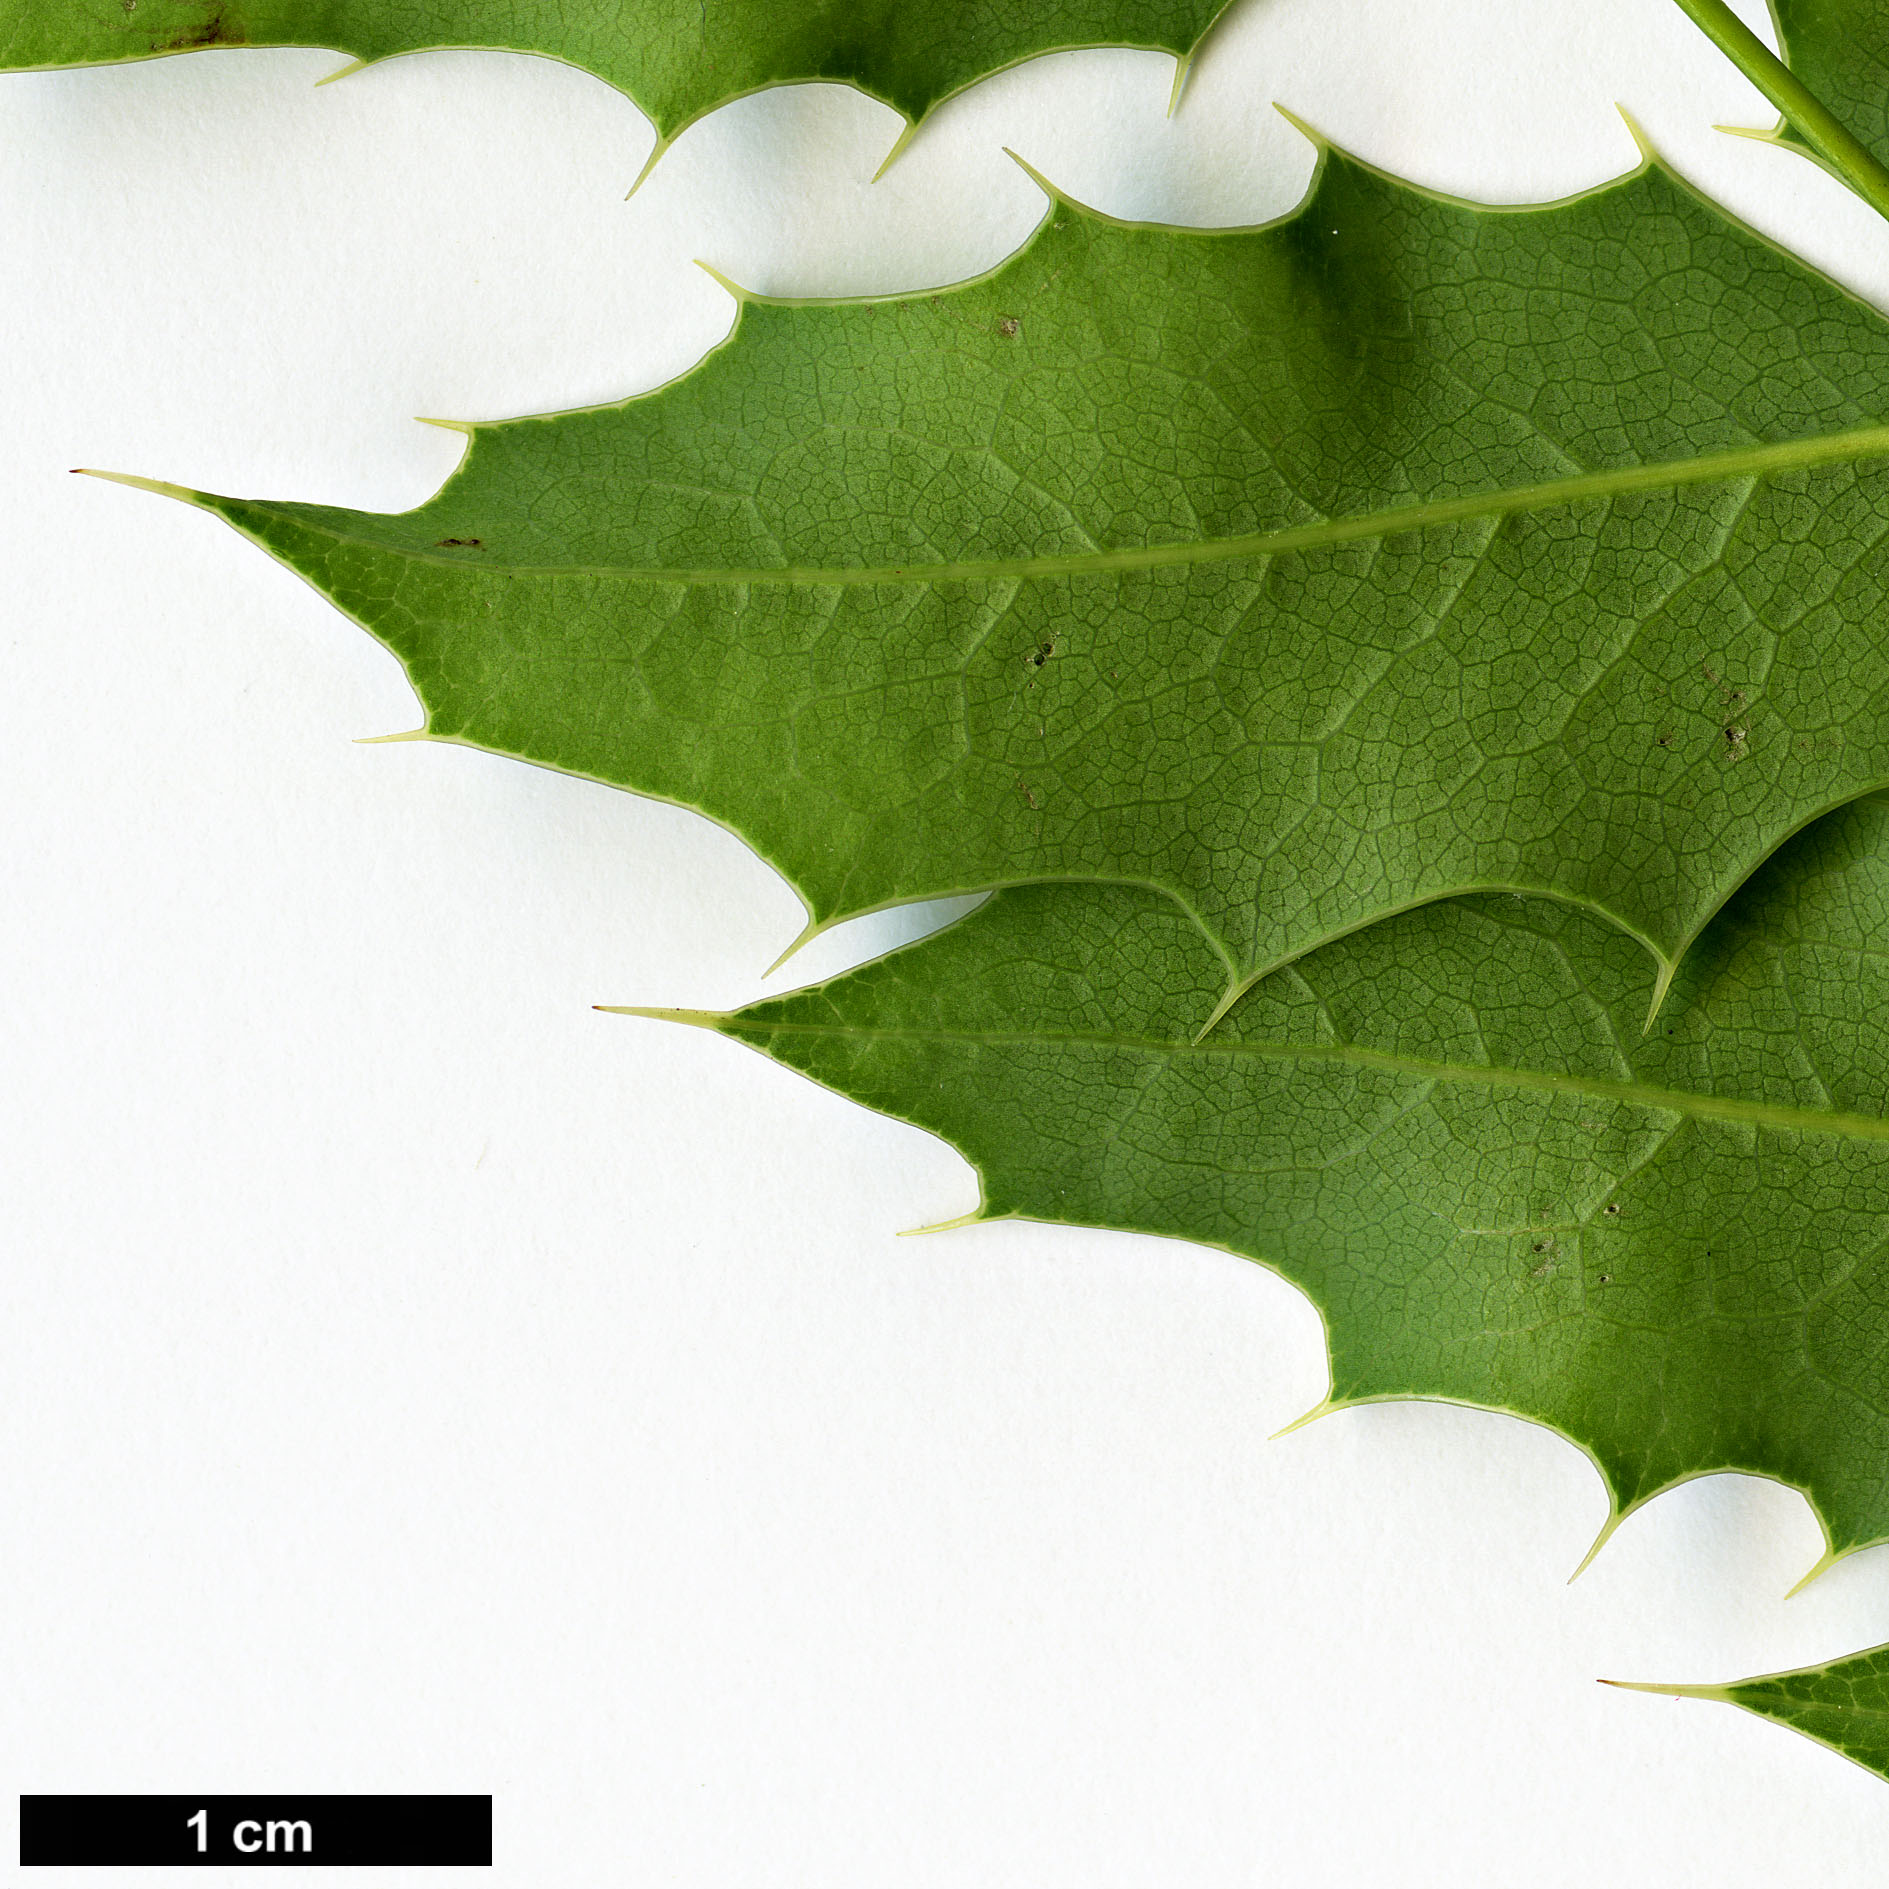 High resolution image: Family: Berberidaceae - Genus: Mahonia - Taxon: moranensis